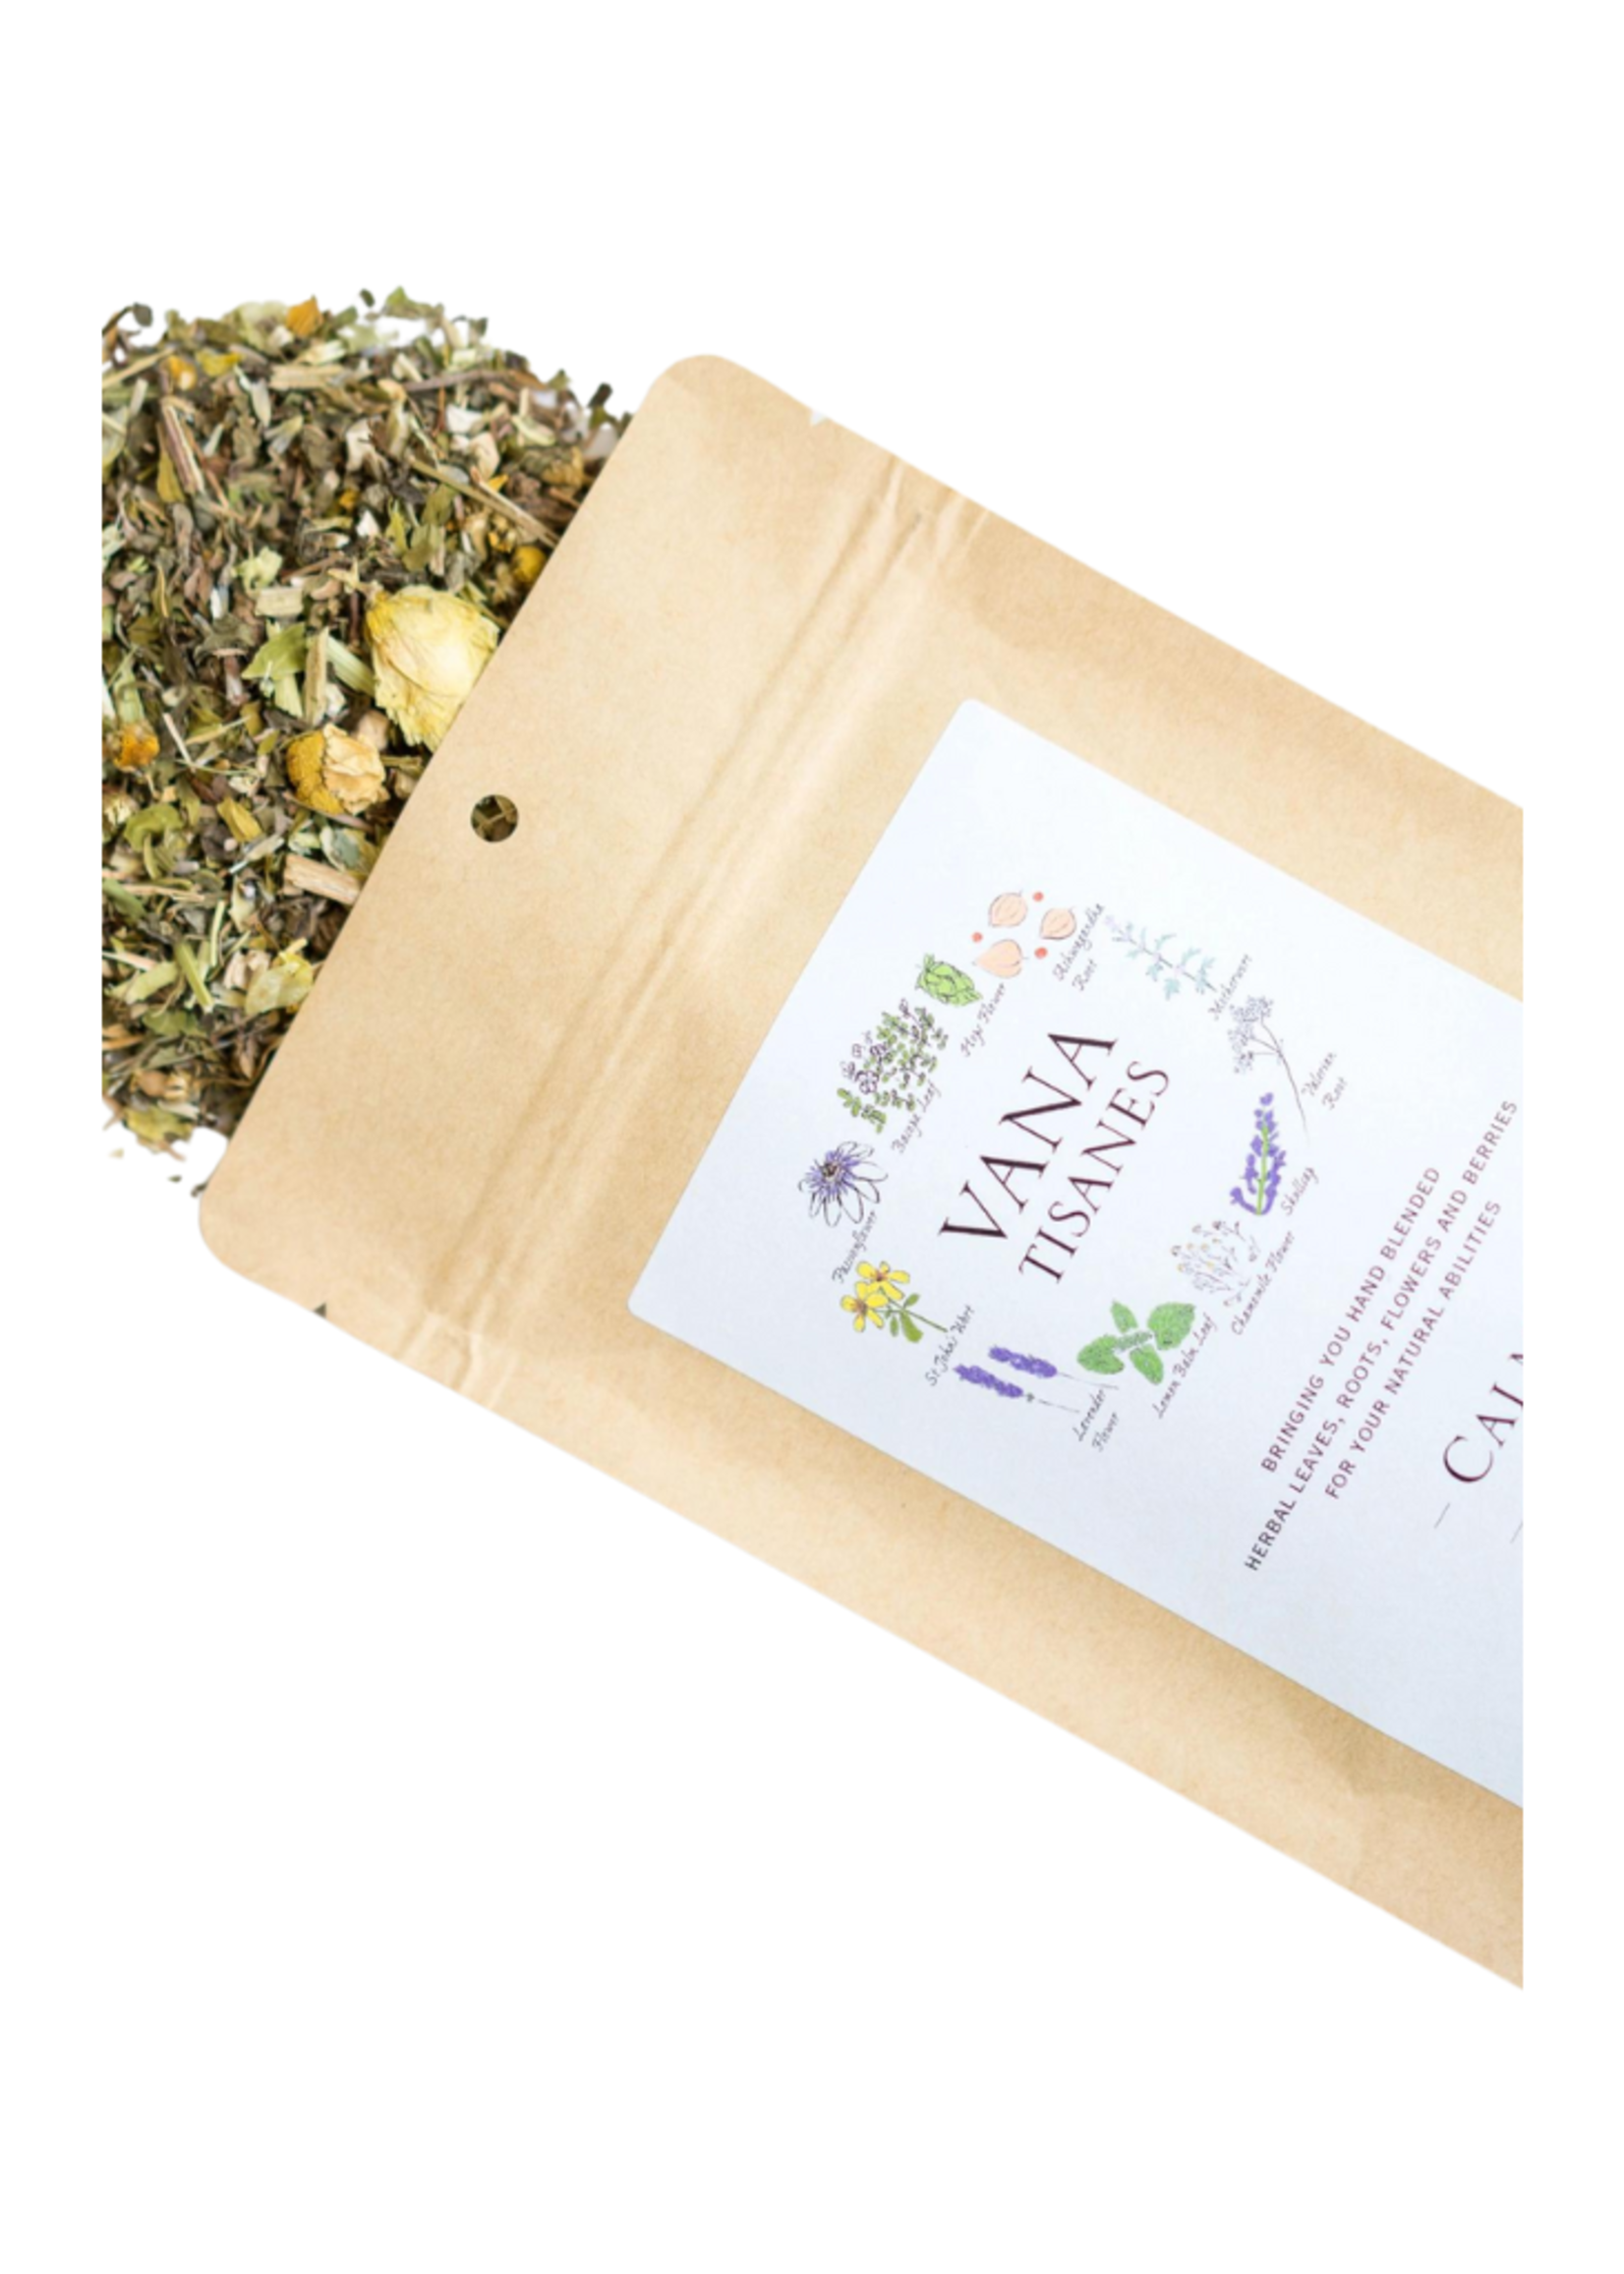 Vana Tisanes Vana Tisanes - Calm Loose Leaf Herbal Tea